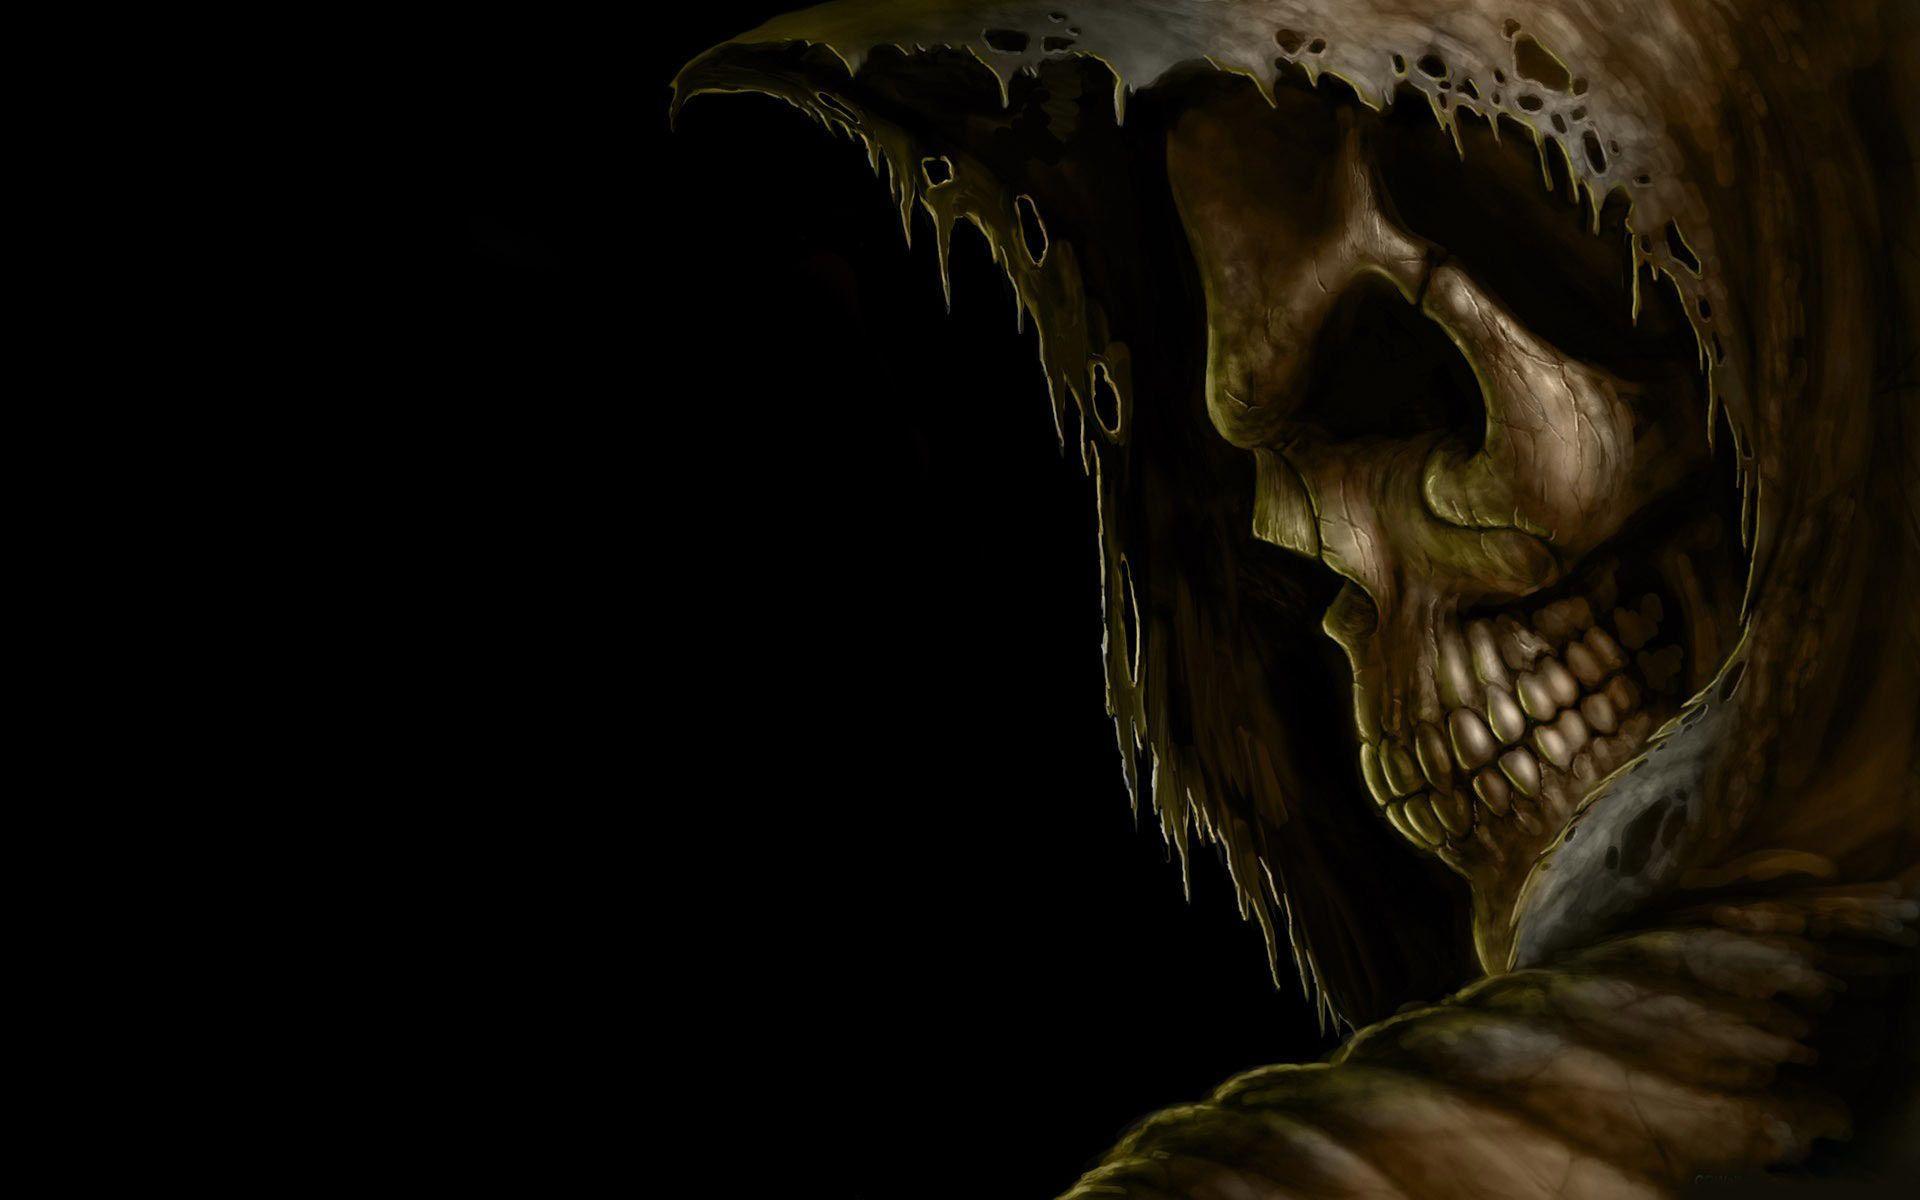 Grim reaper death dark skull hood eyes evil scary spooky creepy teeth black halloween wallpaperx1200